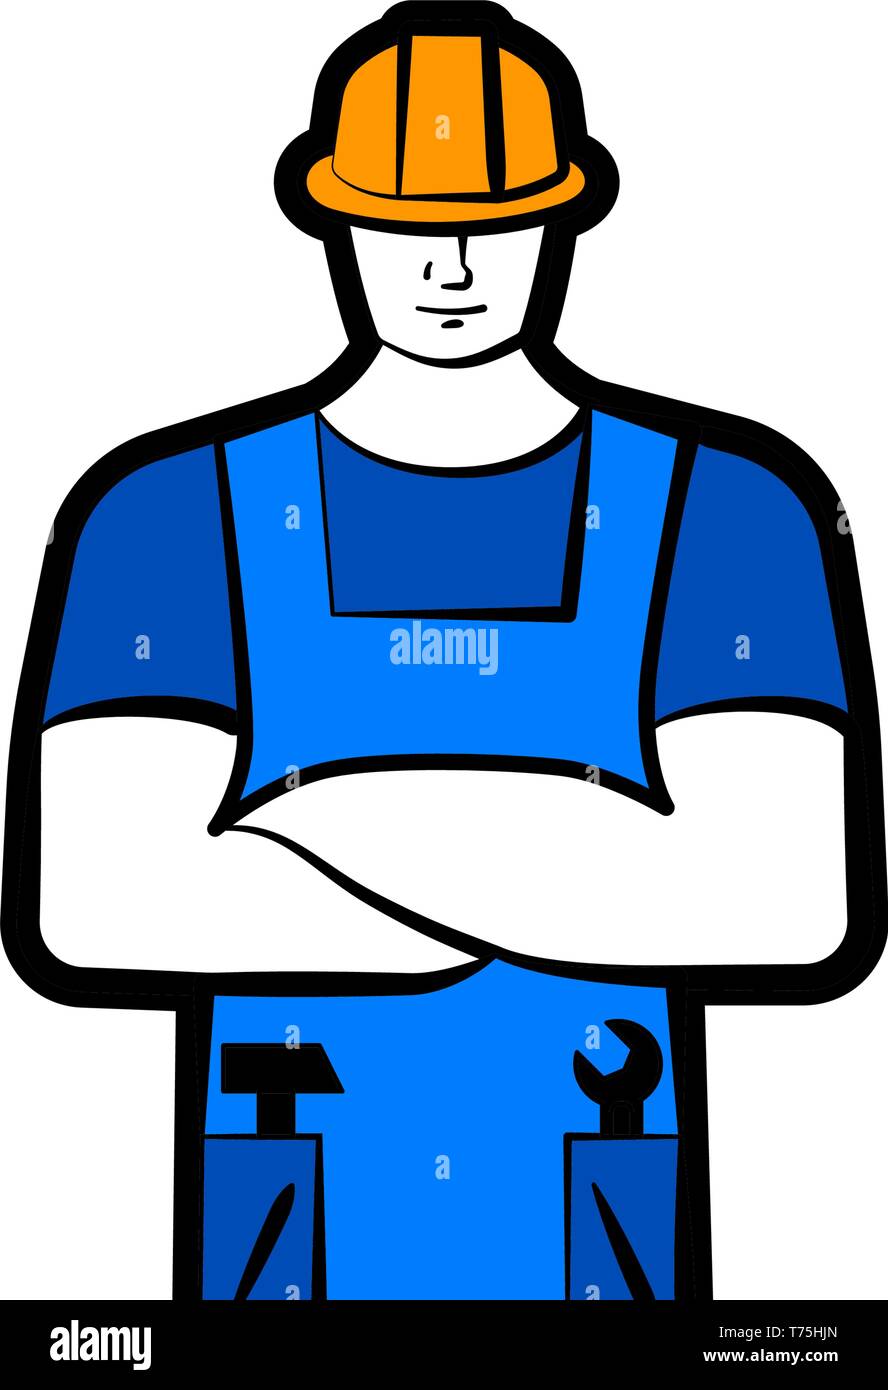 Männliche Arbeiter oder Builder in der Arbeit blau Kleidung und Helm. Arbeitskonzept. Vector Illustration Stock Vektor